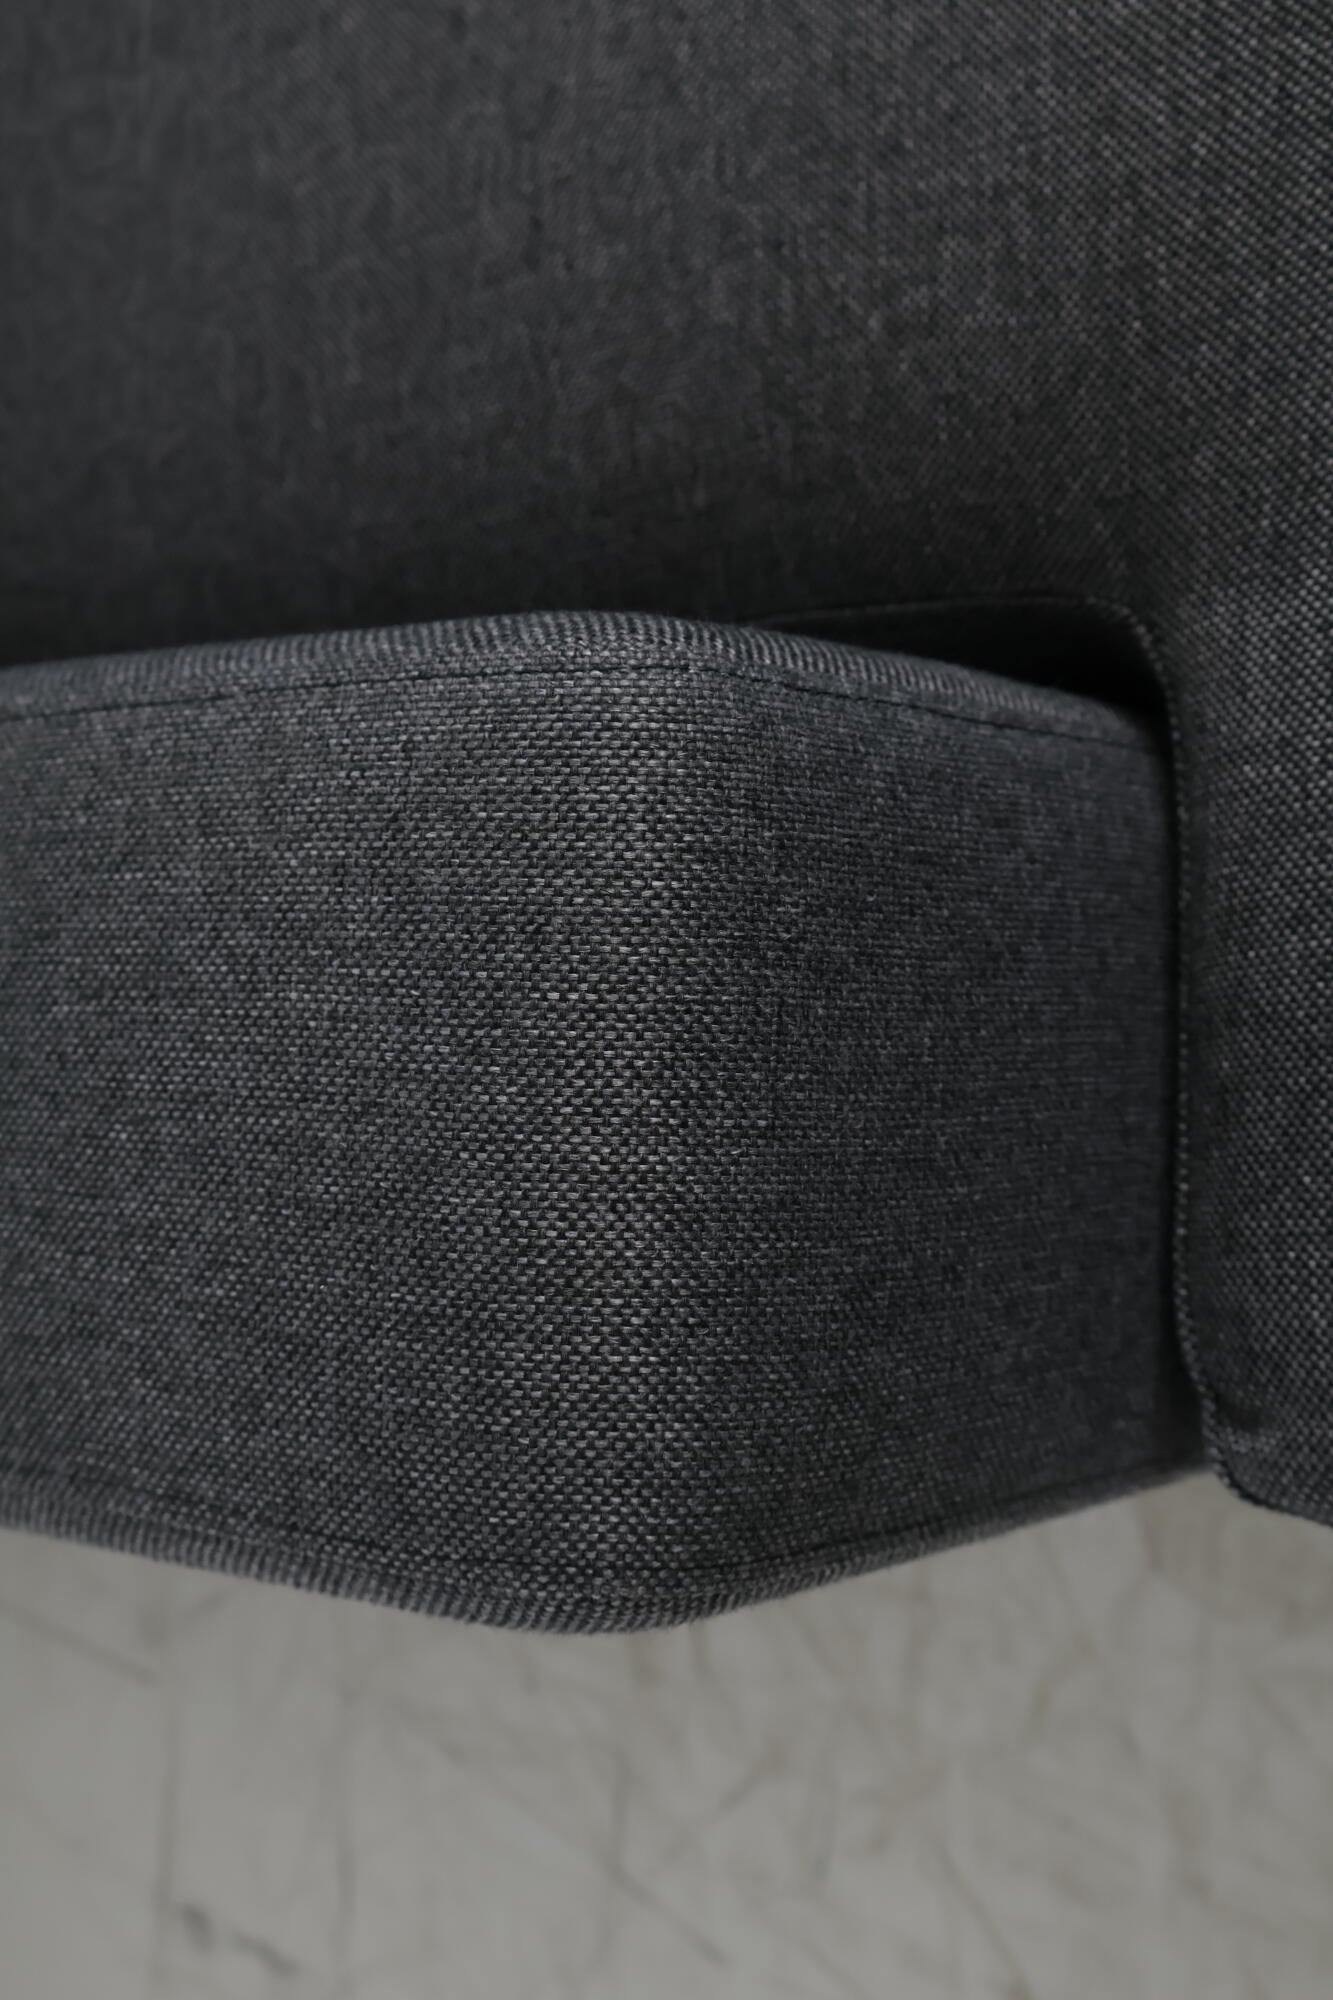 Nyrenset | Grå Crazy U-sofa XL med divan og åpen ende